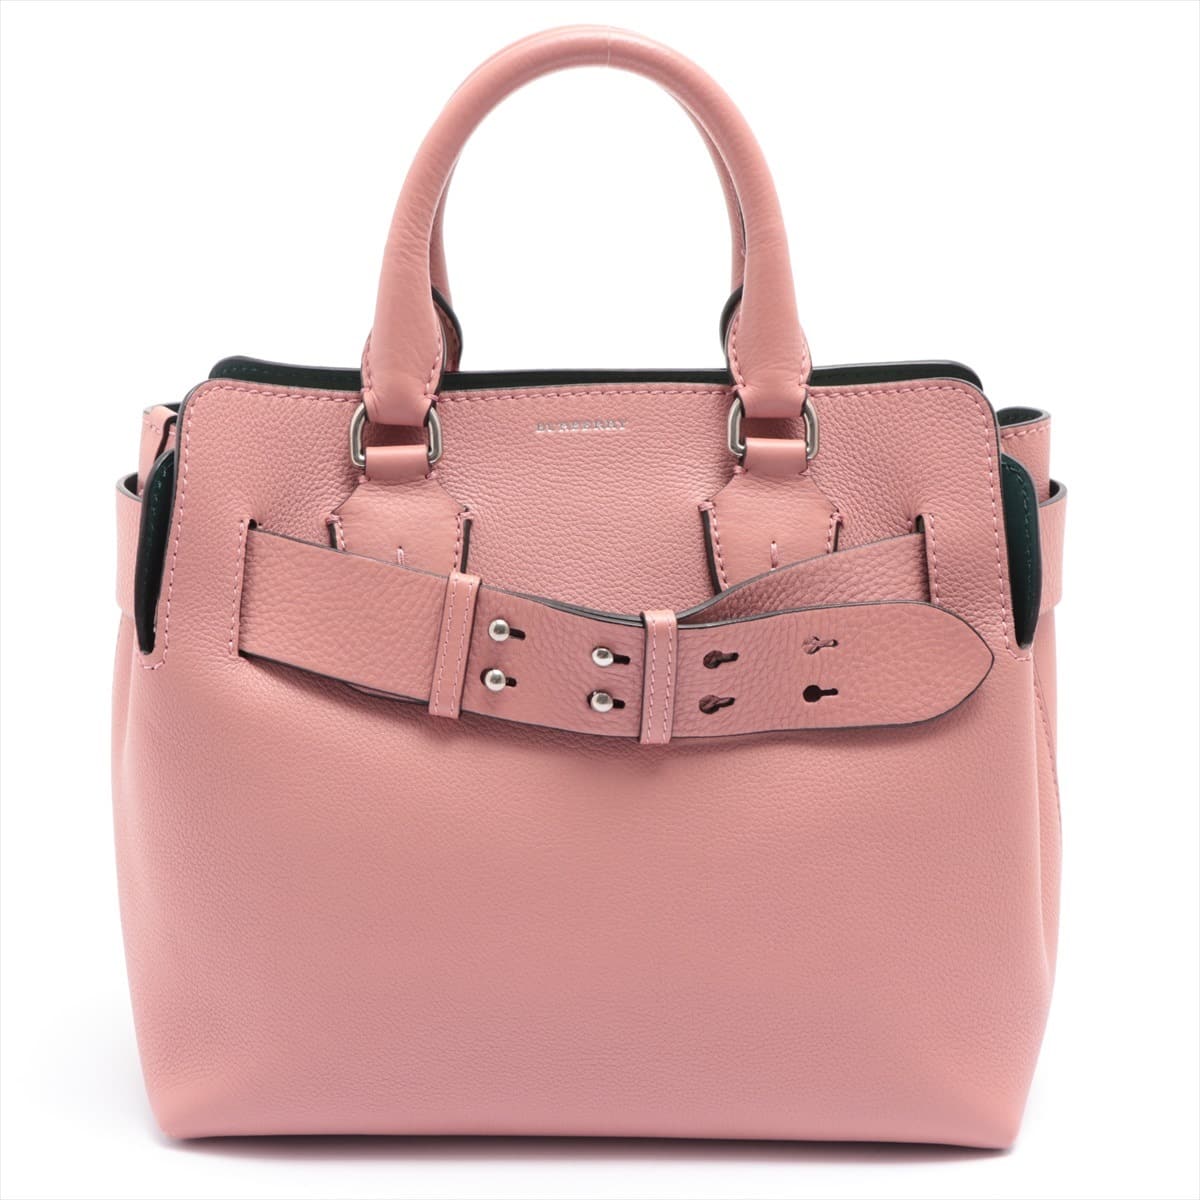 Burberry Belt Bag Leather 2way shoulder bag Pink